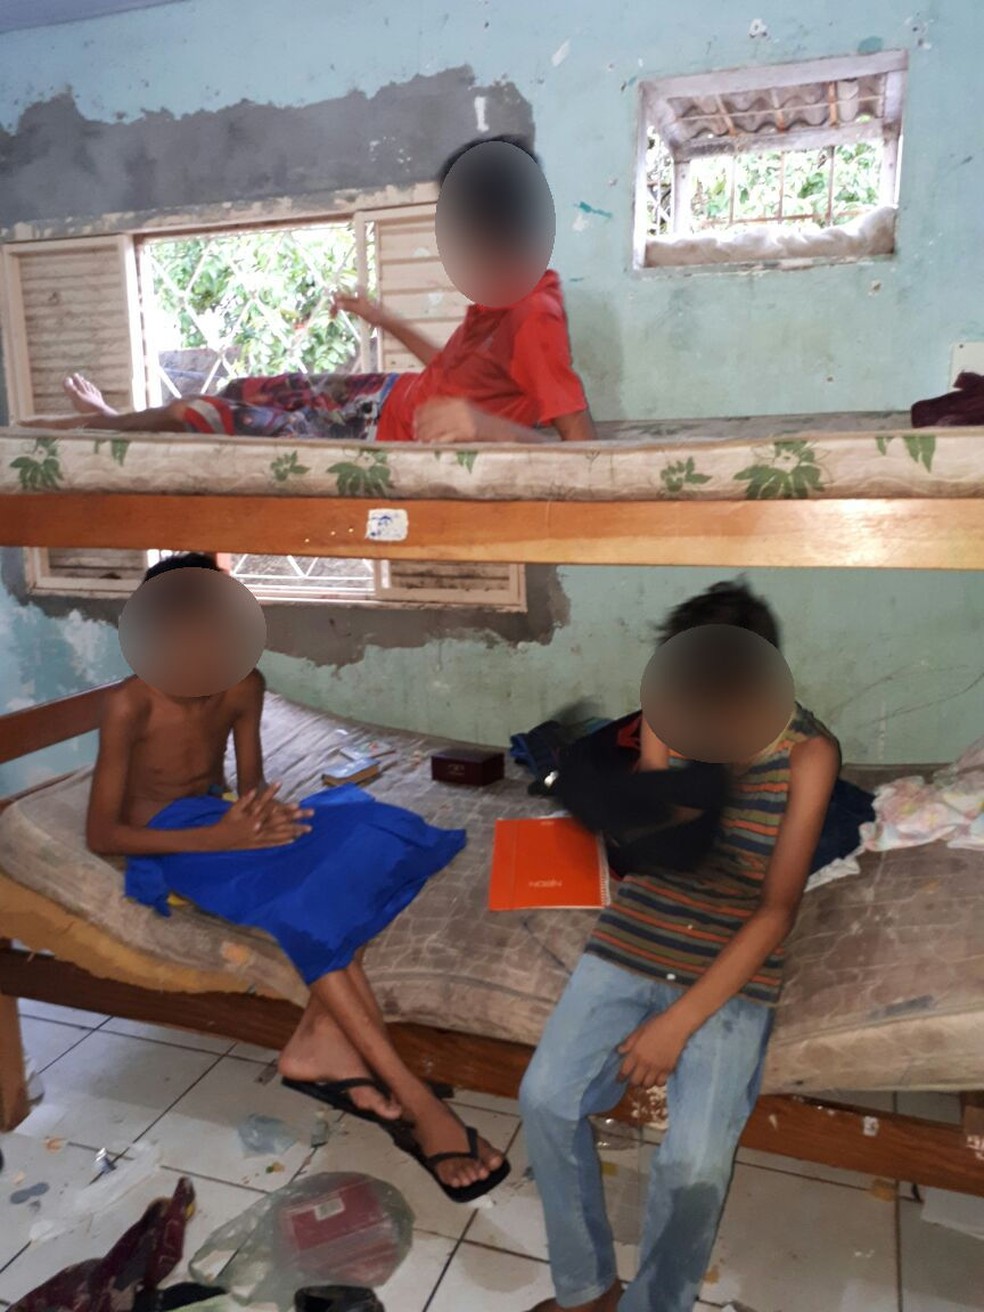 Segundo a polícia, crianças estavam em cômodo com sujeira e dormiam em colchão molhado (Foto: Polícia Civil de MT/Assessoria)